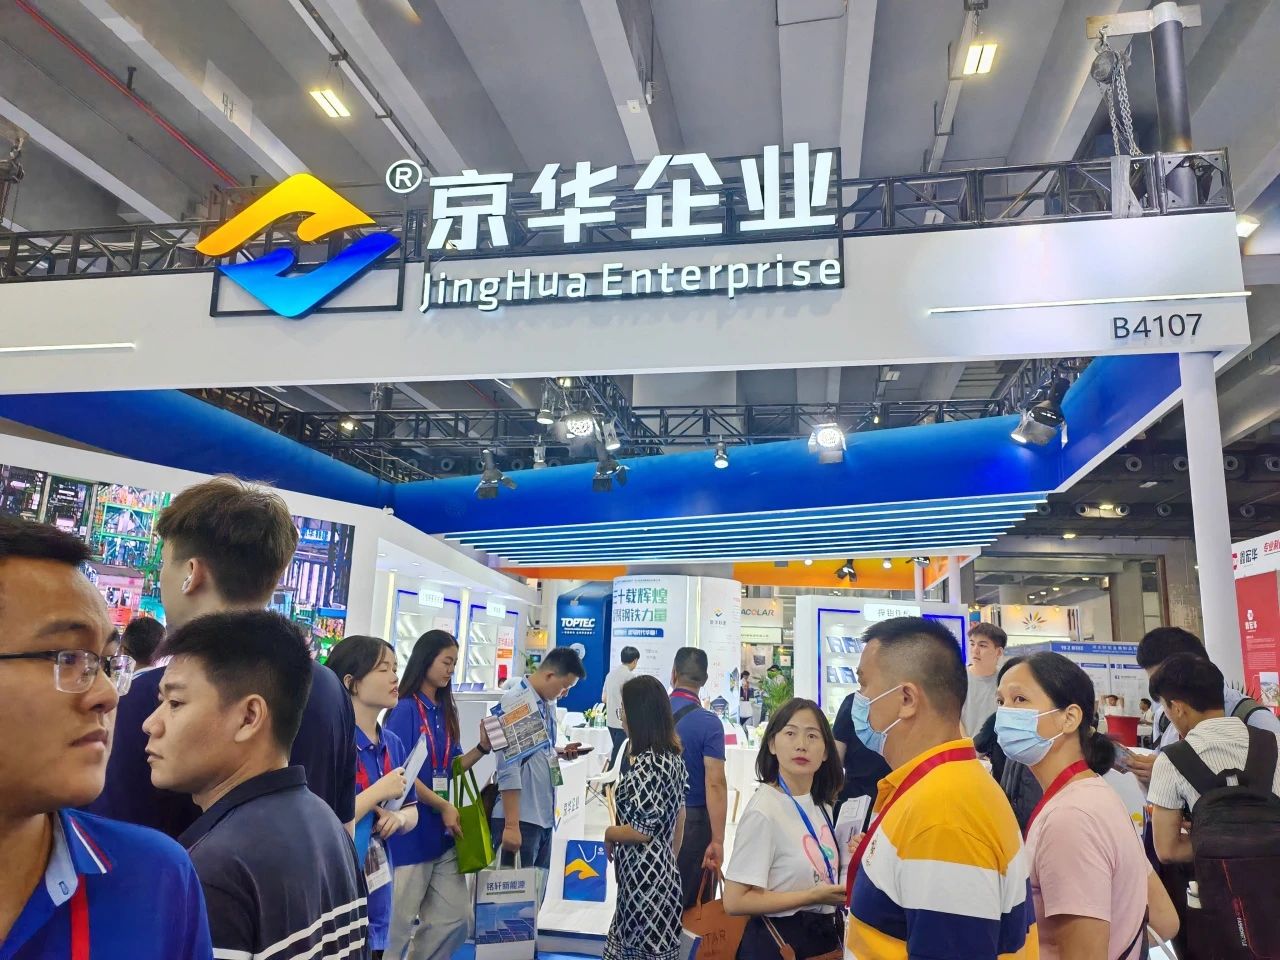 京華企業出席“世界太陽能光伏暨儲能產業博覽會”